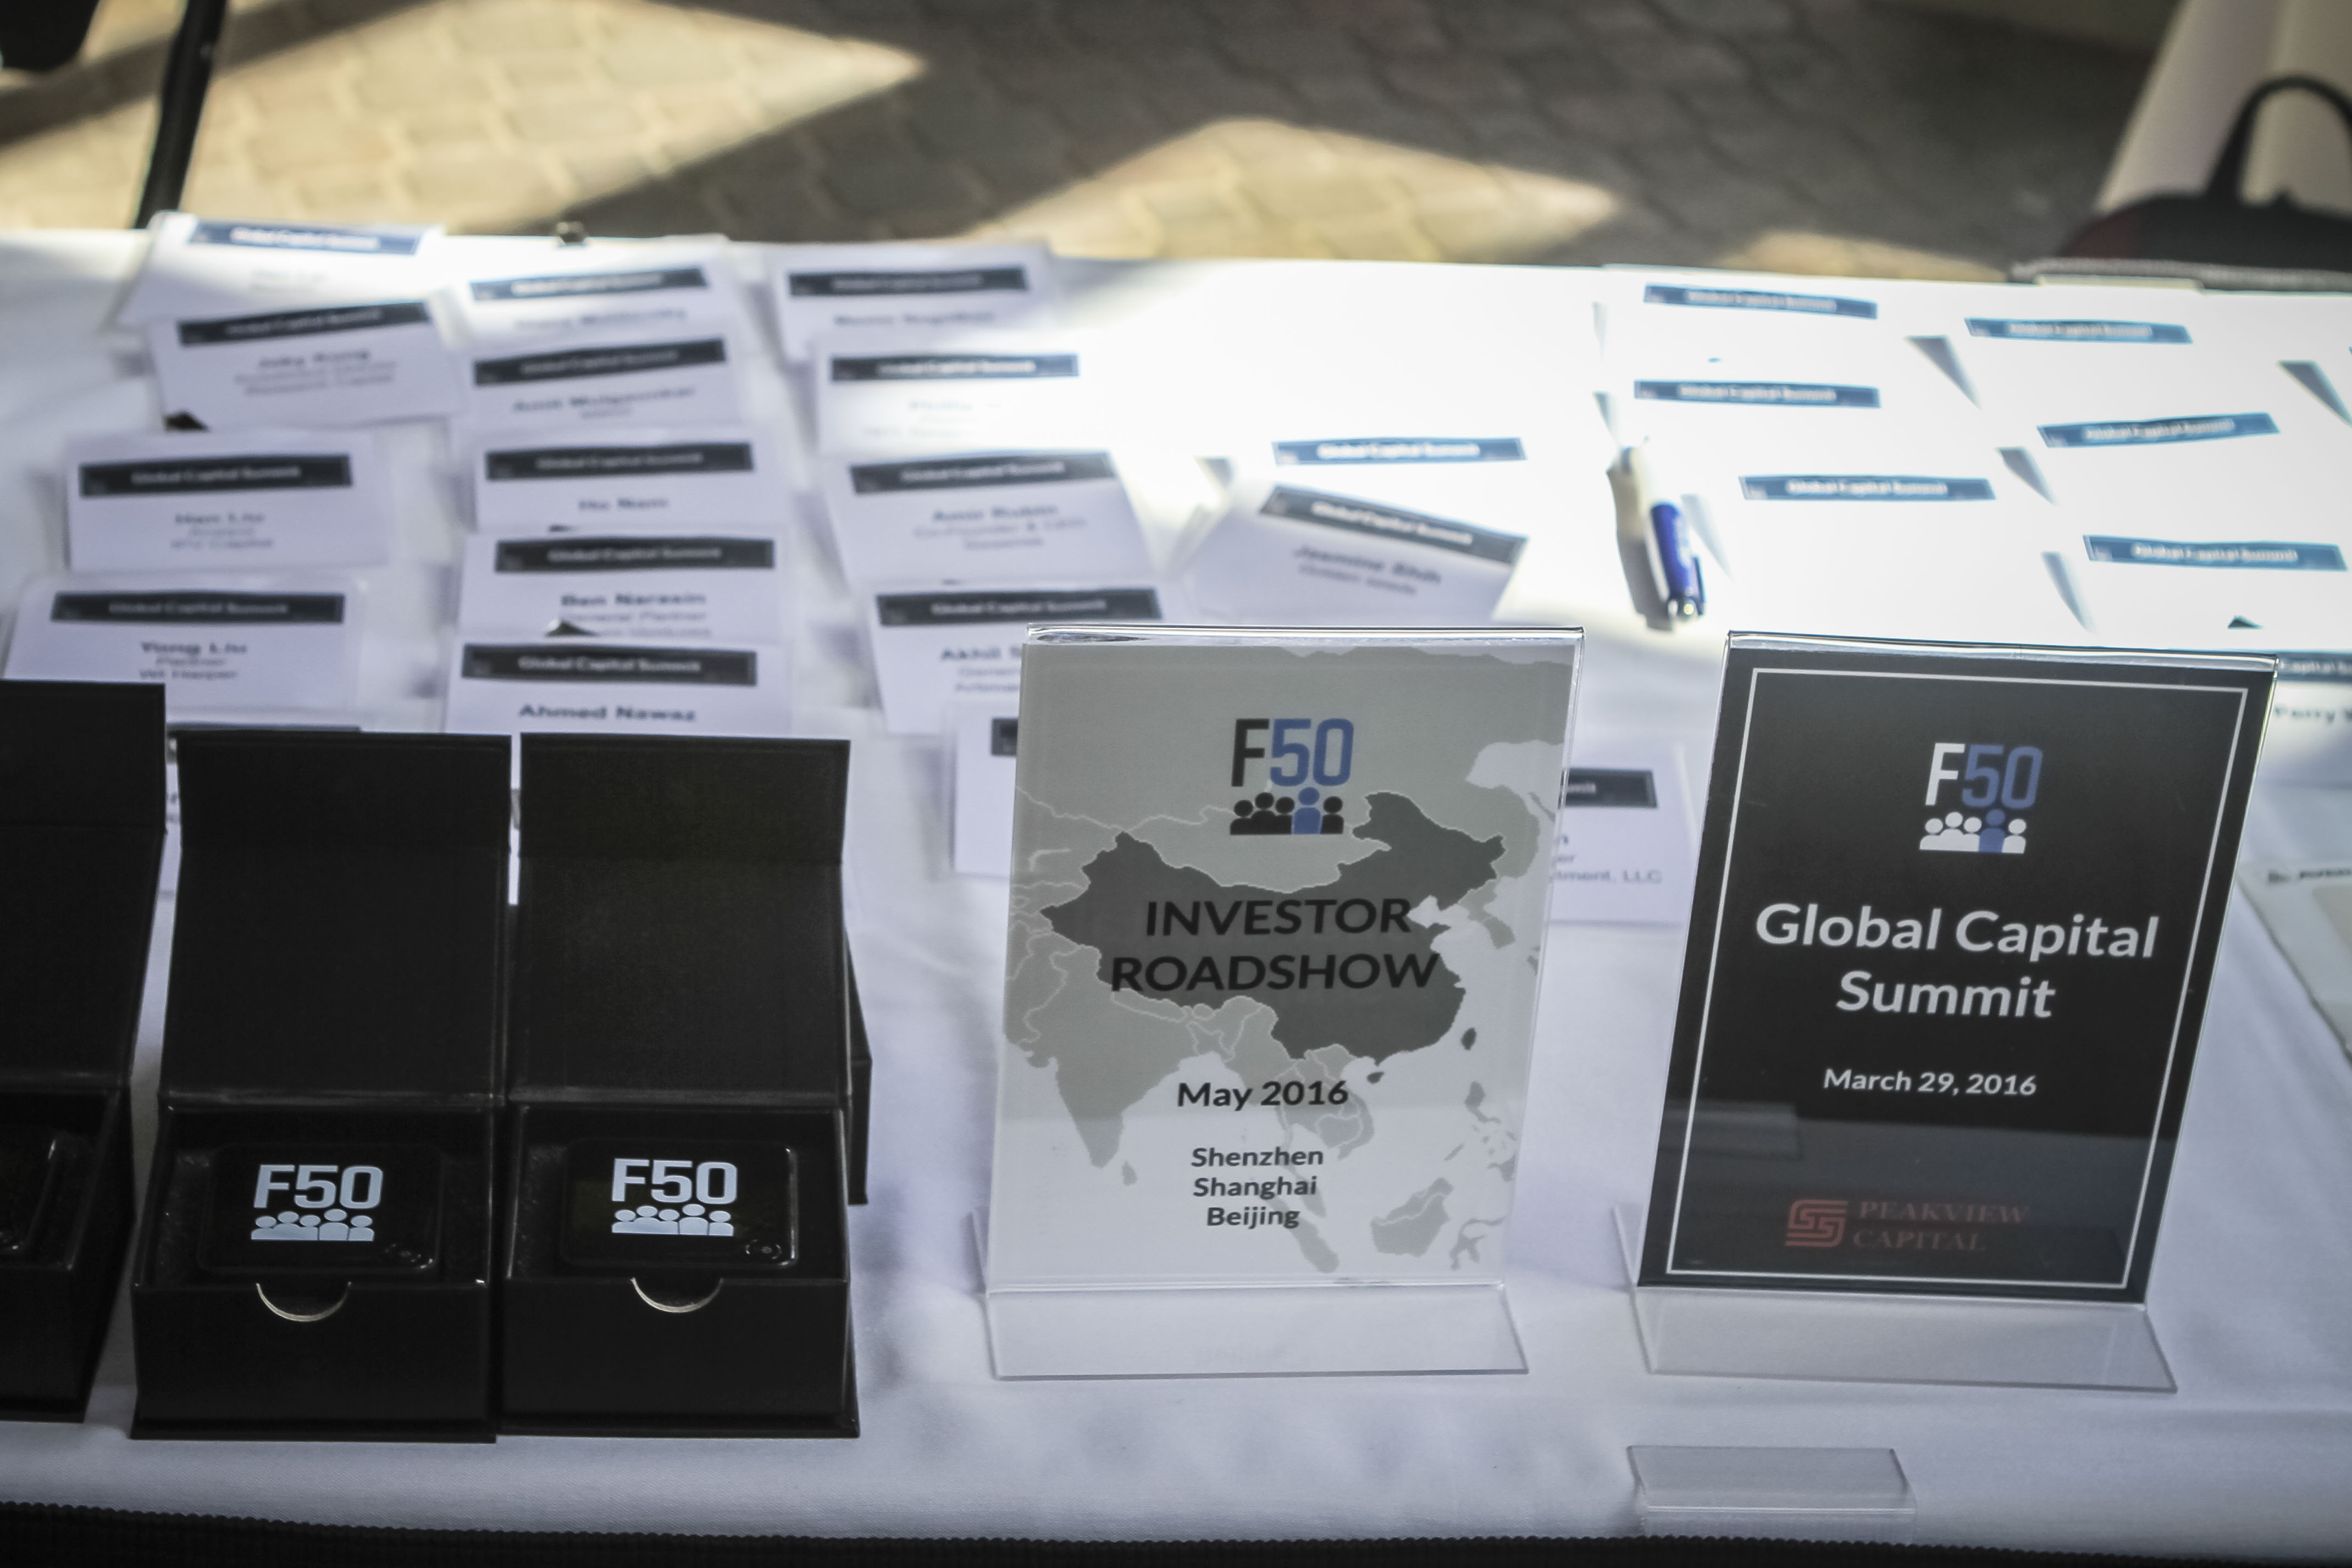 F50 Global Capital Summit Registration